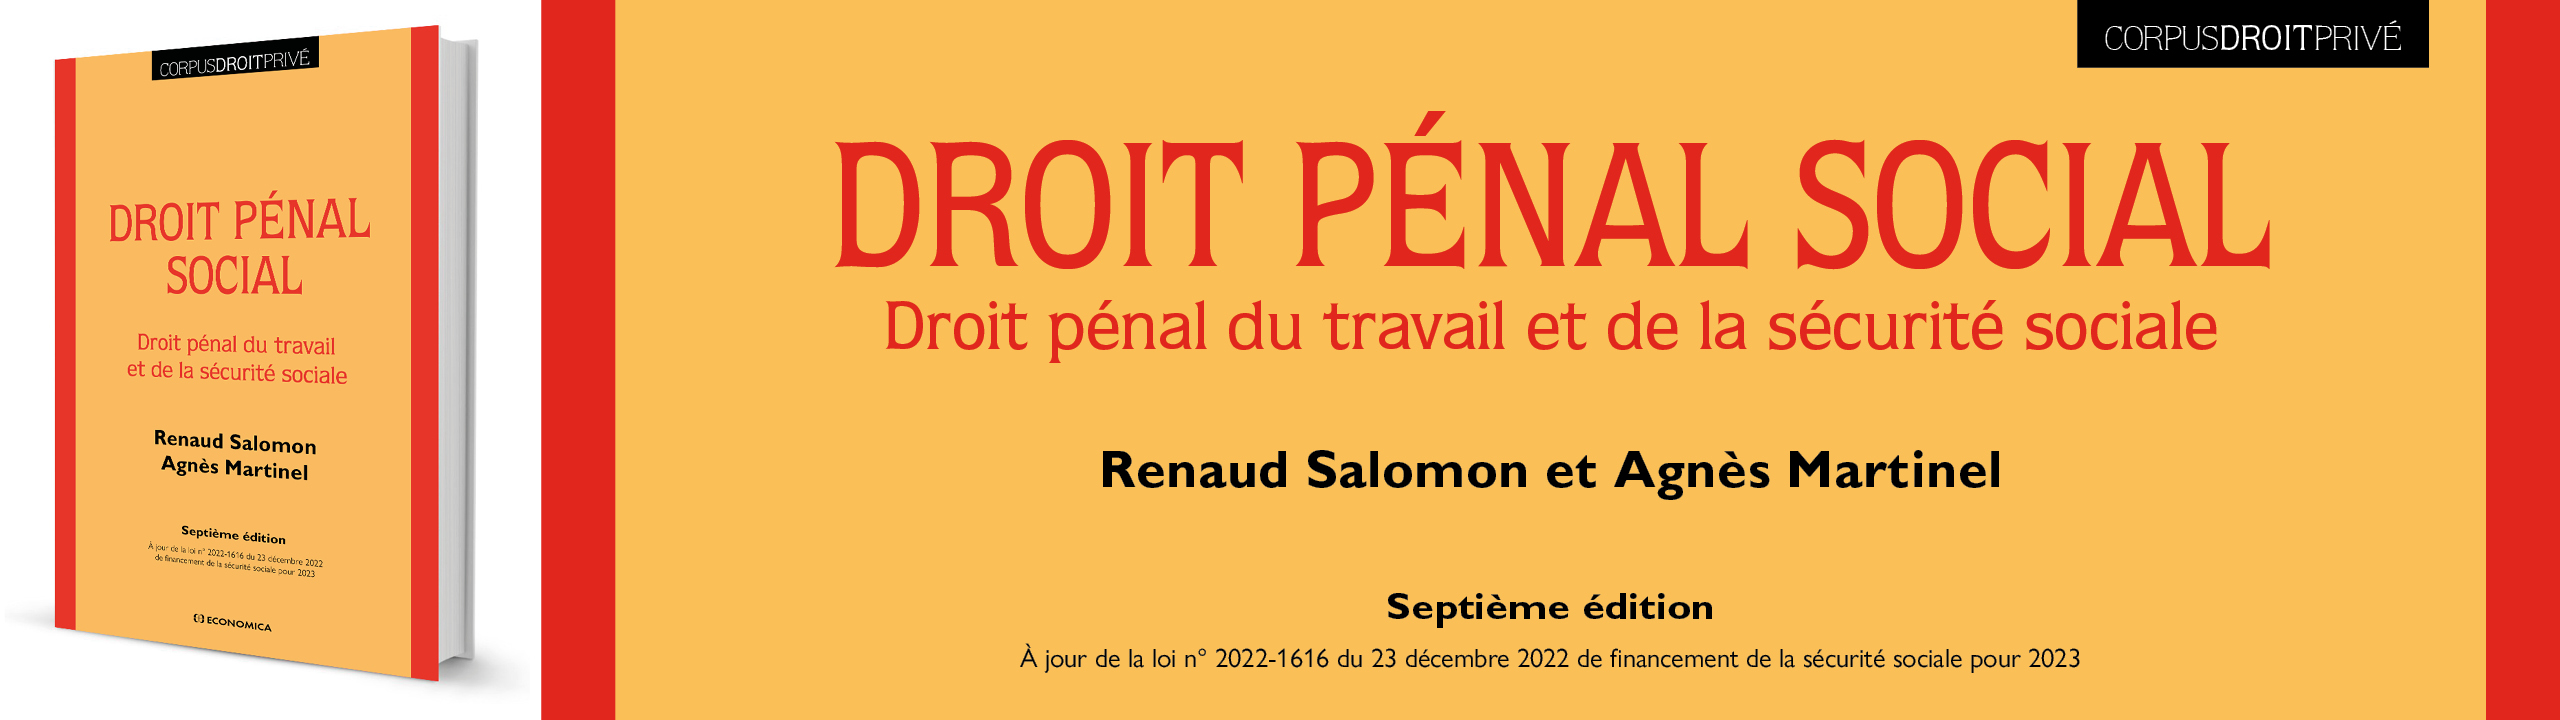 Droit pénal social, 7e édition - Renaud Salomon et Agnès Martinel - 9782717872637